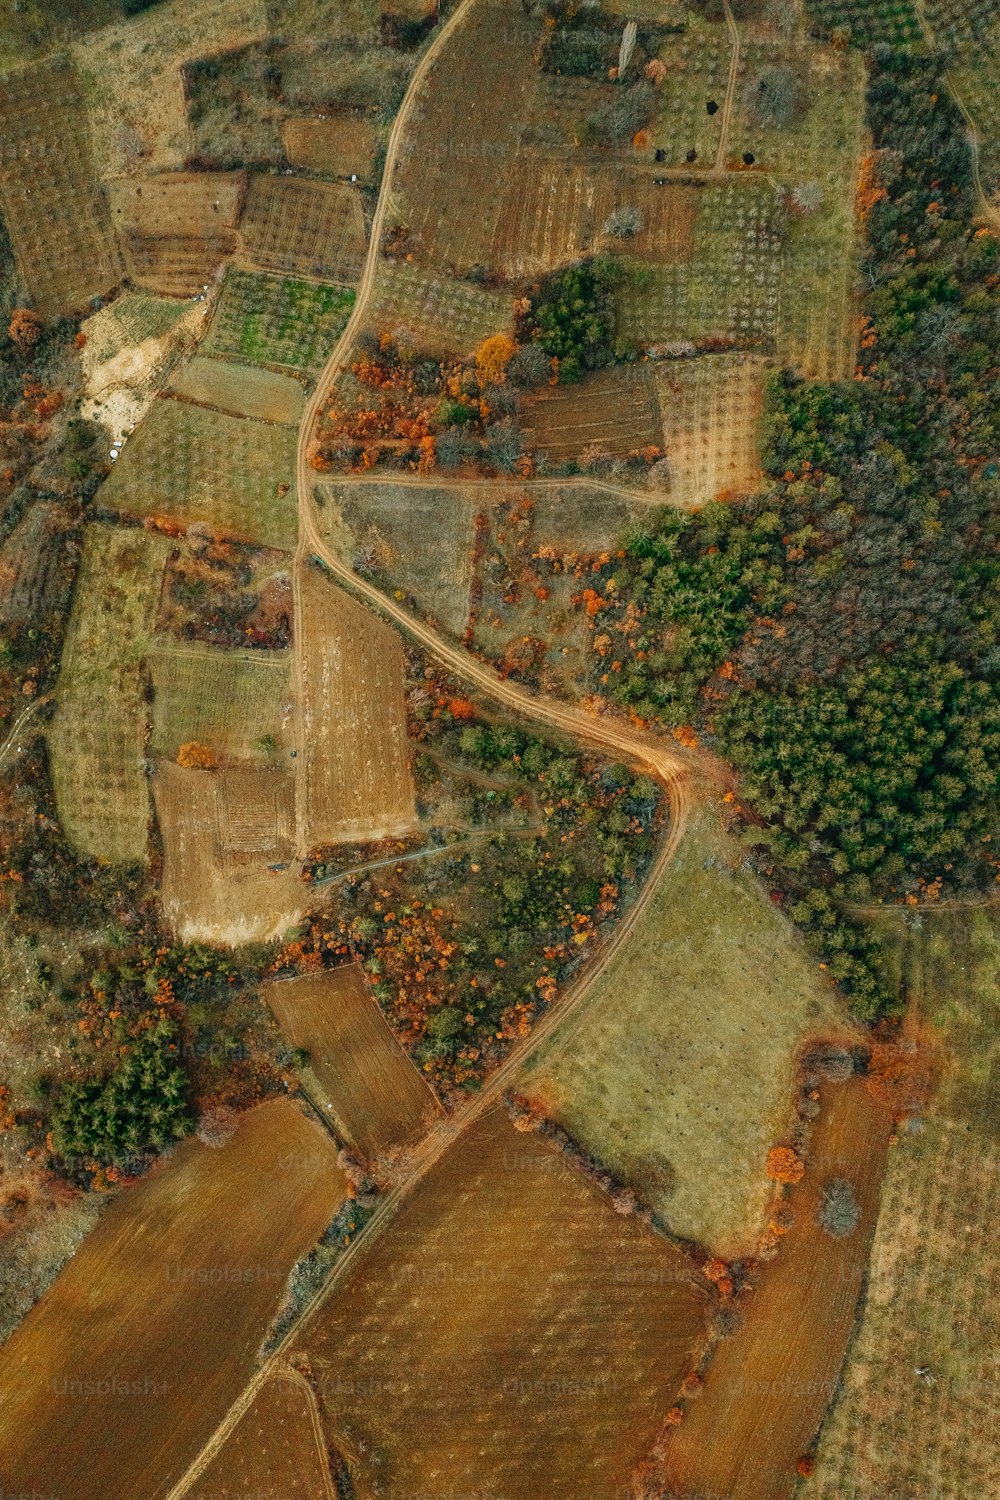 una veduta aerea di una zona rurale con molti alberi